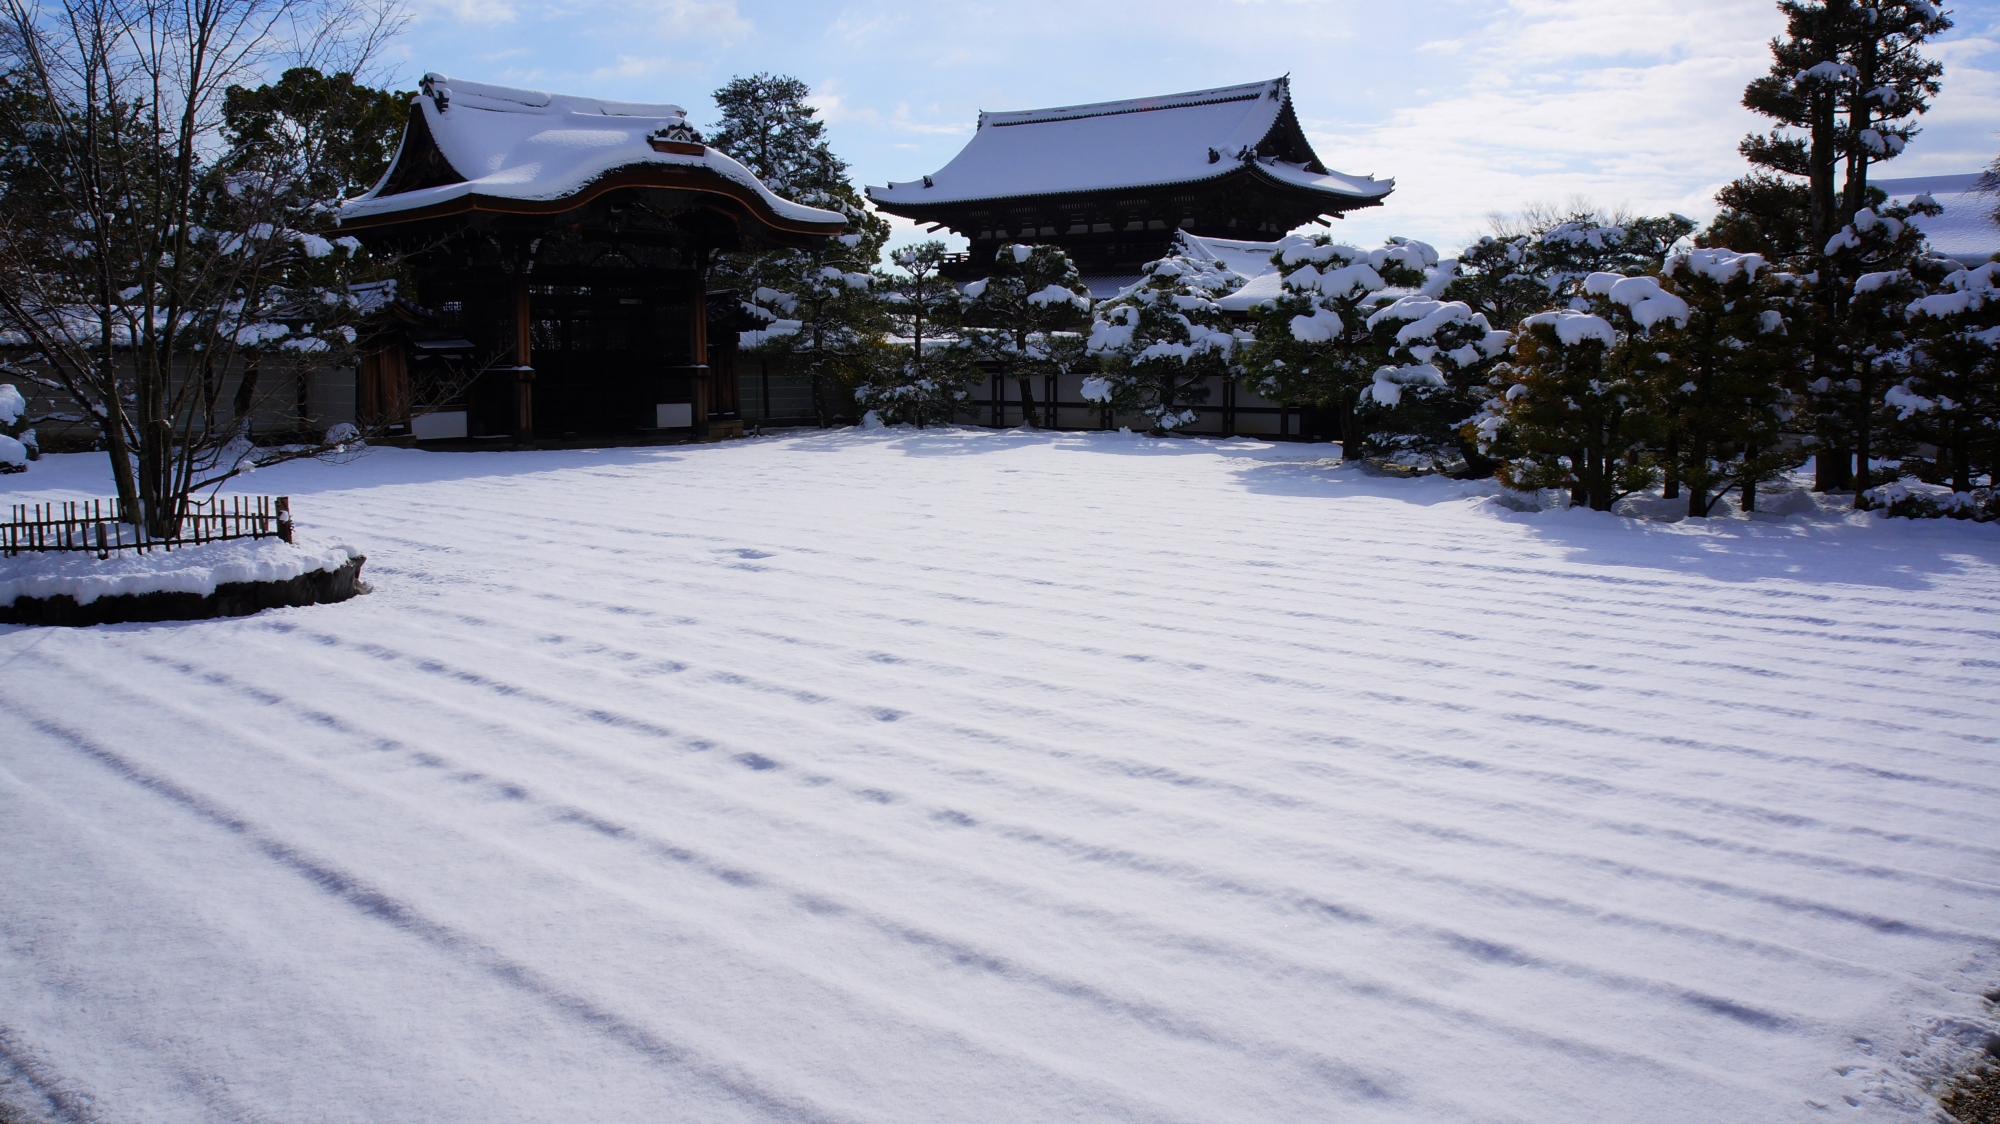 仁和寺の御殿南庭の冬景色